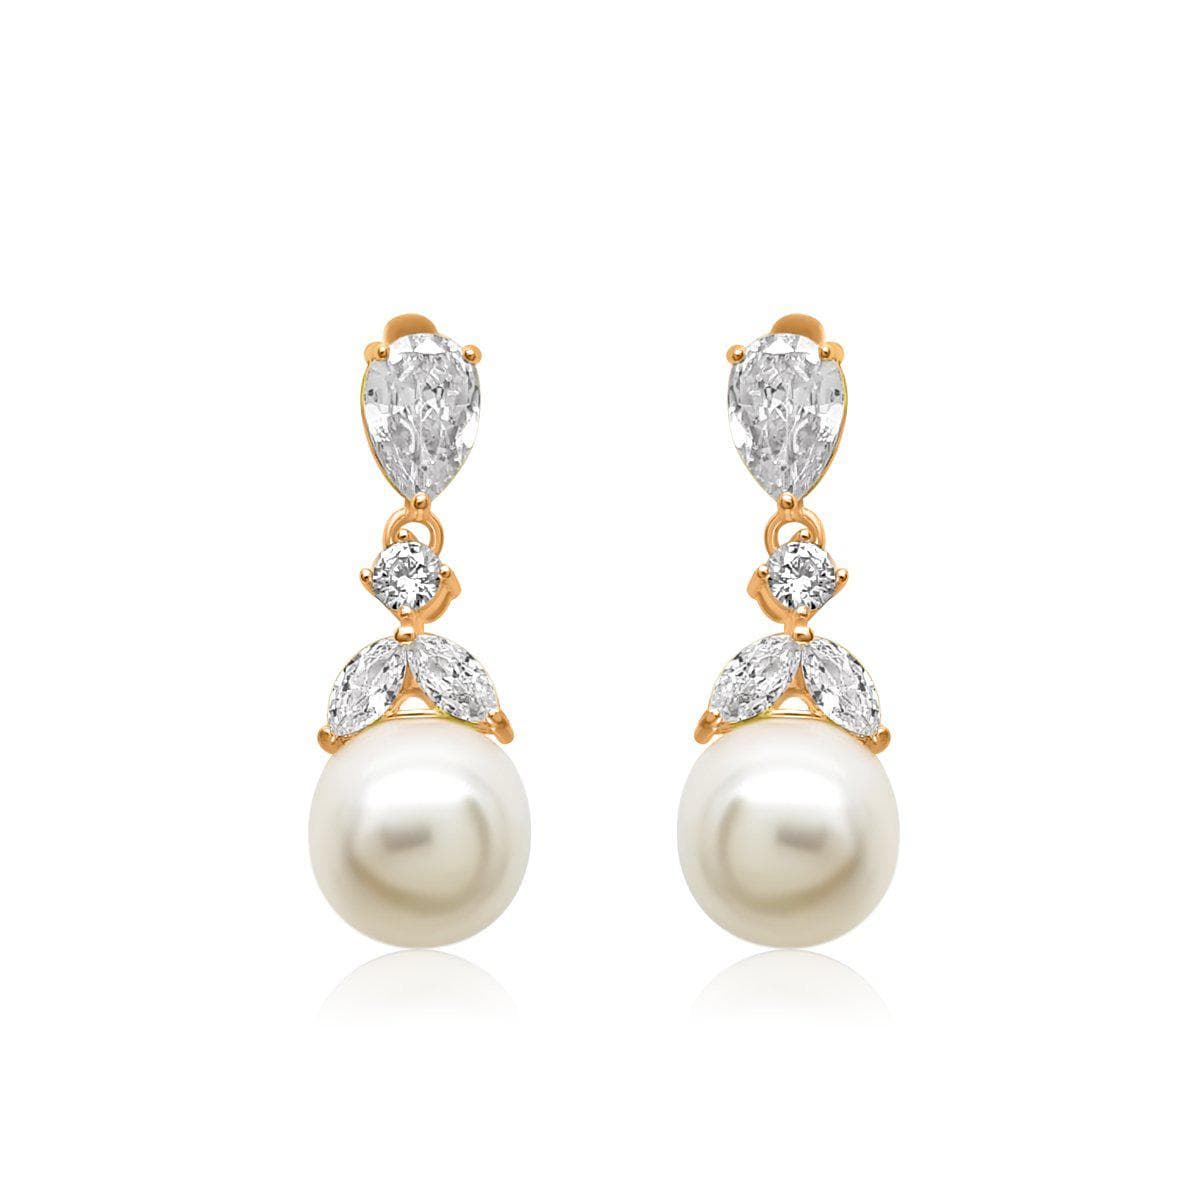 22k gold pearl earrings | Gold jewellery design necklaces, Pearl earrings,  Pearl jewelry design